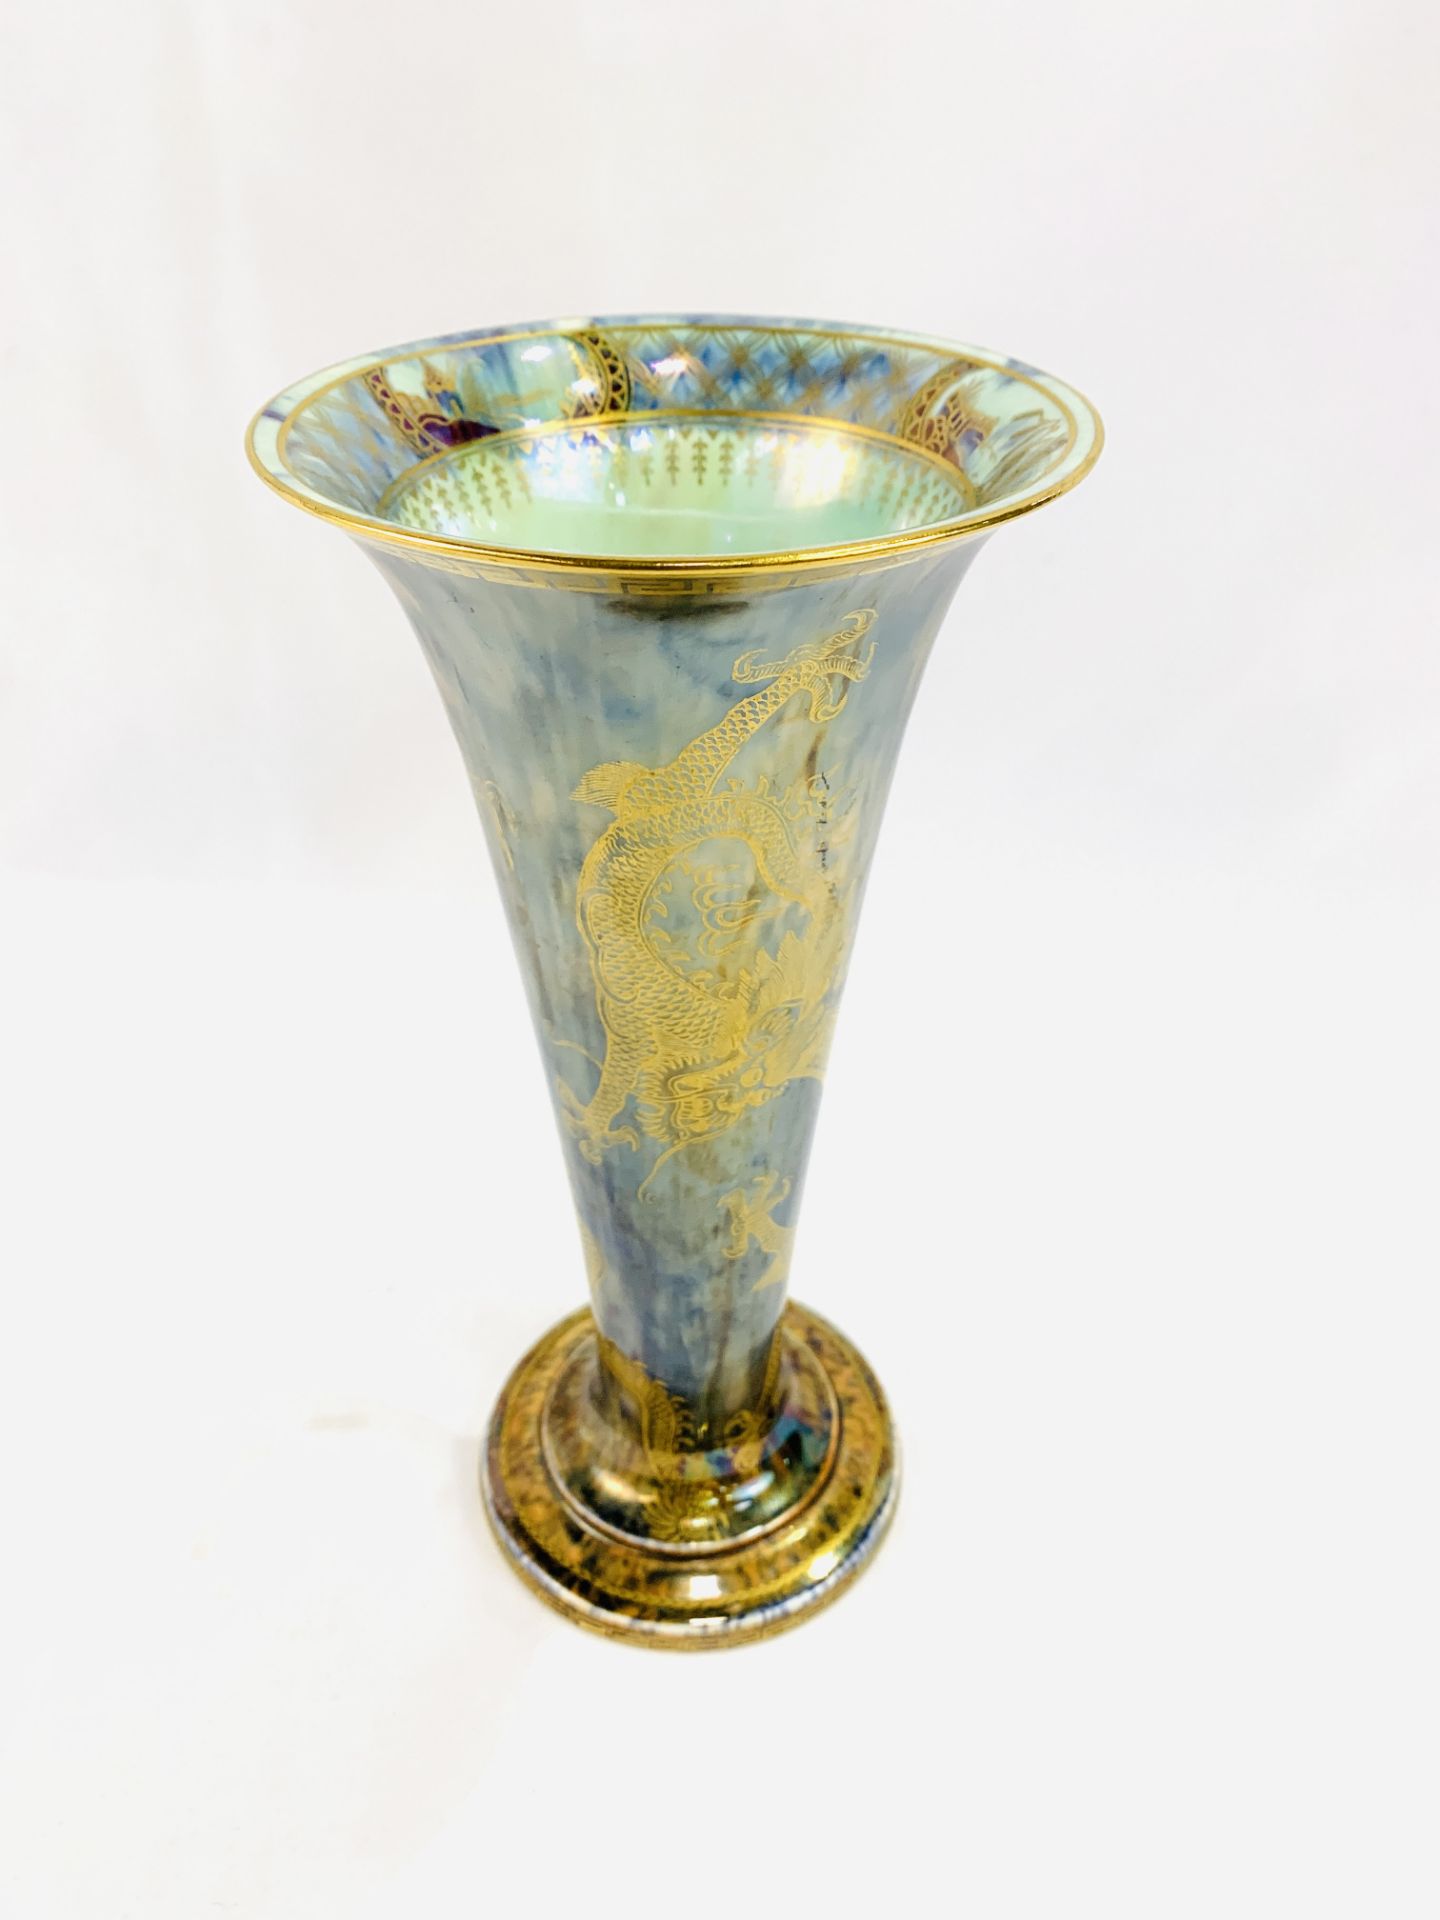 Wedgwood Fairyland lustre vase - Image 2 of 7